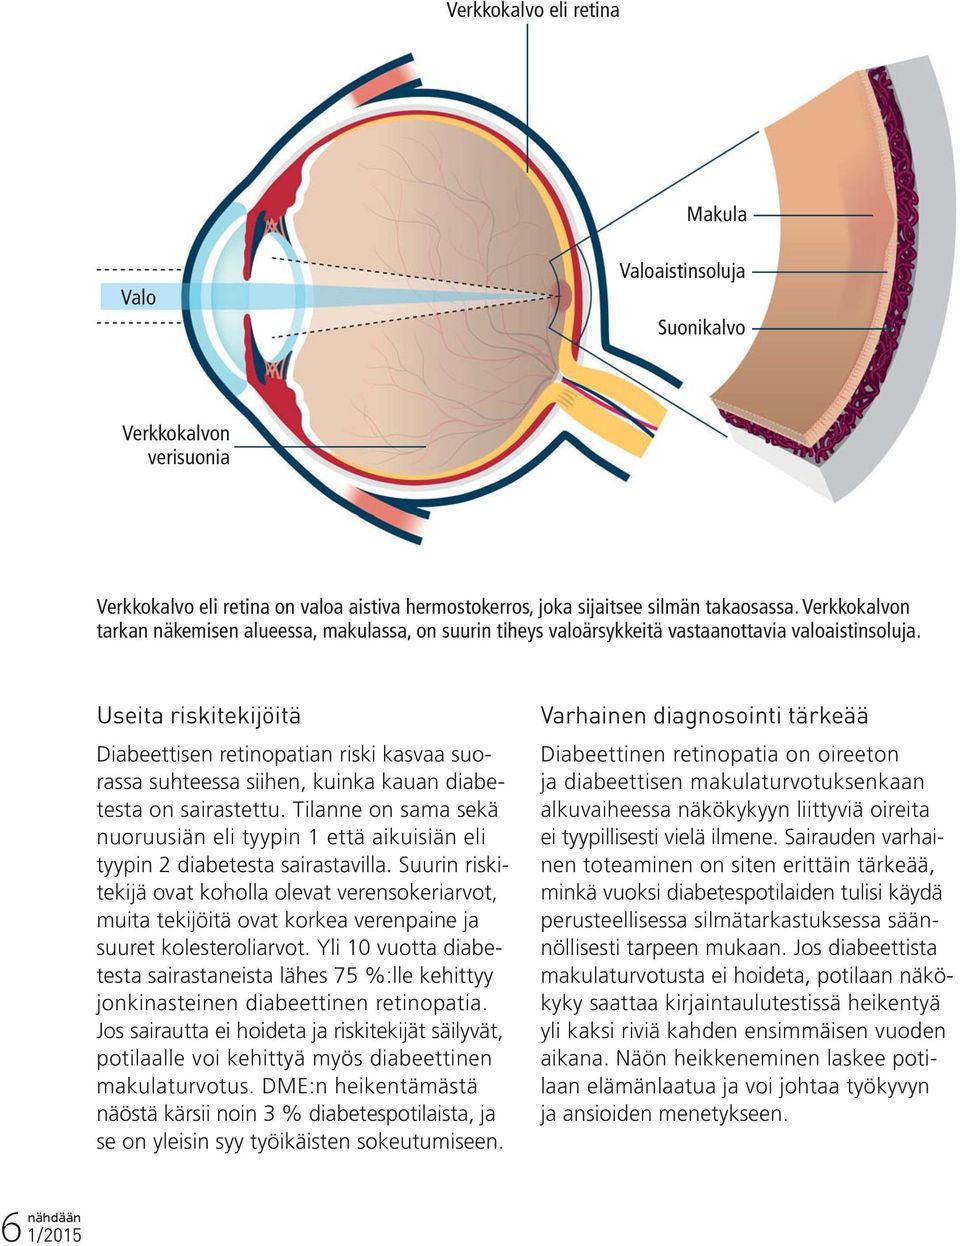 Useita riskitekijöitä Diabeettisen retinopatian riski kasvaa suorassa suhteessa siihen, kuinka kauan diabetesta on sairastettu.